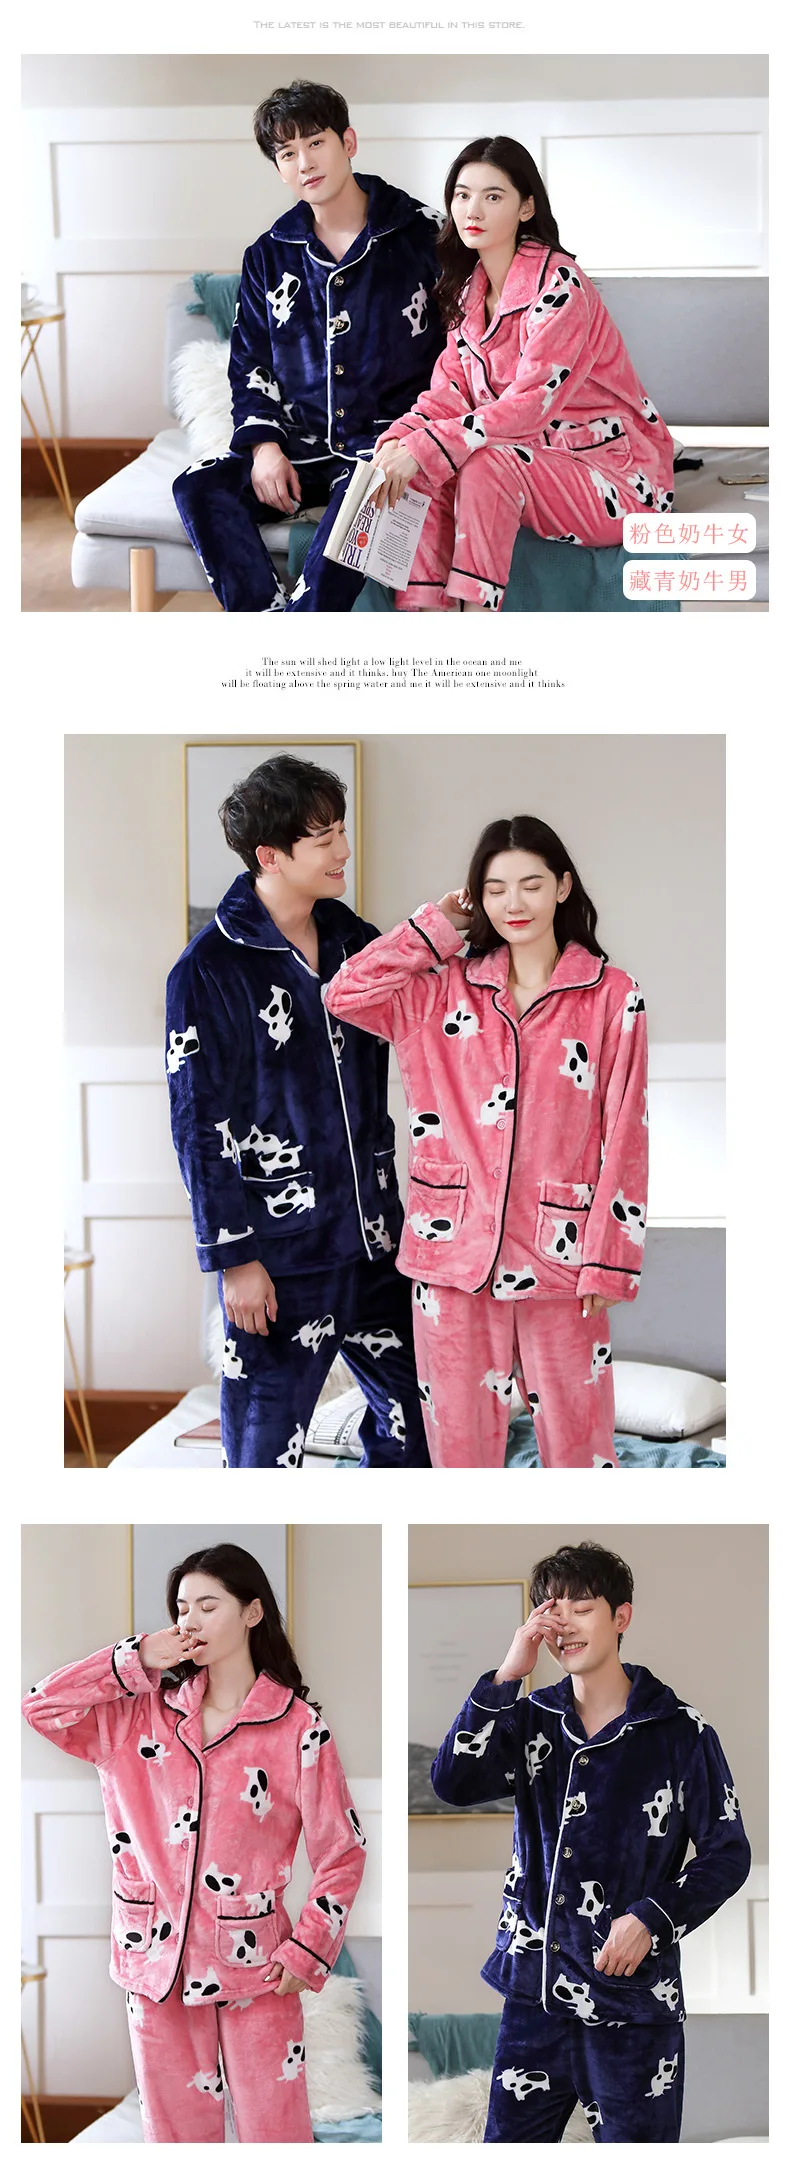 Winter Thicken Warm Flannel Pajama Sets for Women Men Lovers Couple Long Sleeve Coral Velvet Sleepwear Suit Loungewear Homewear silk loungewear